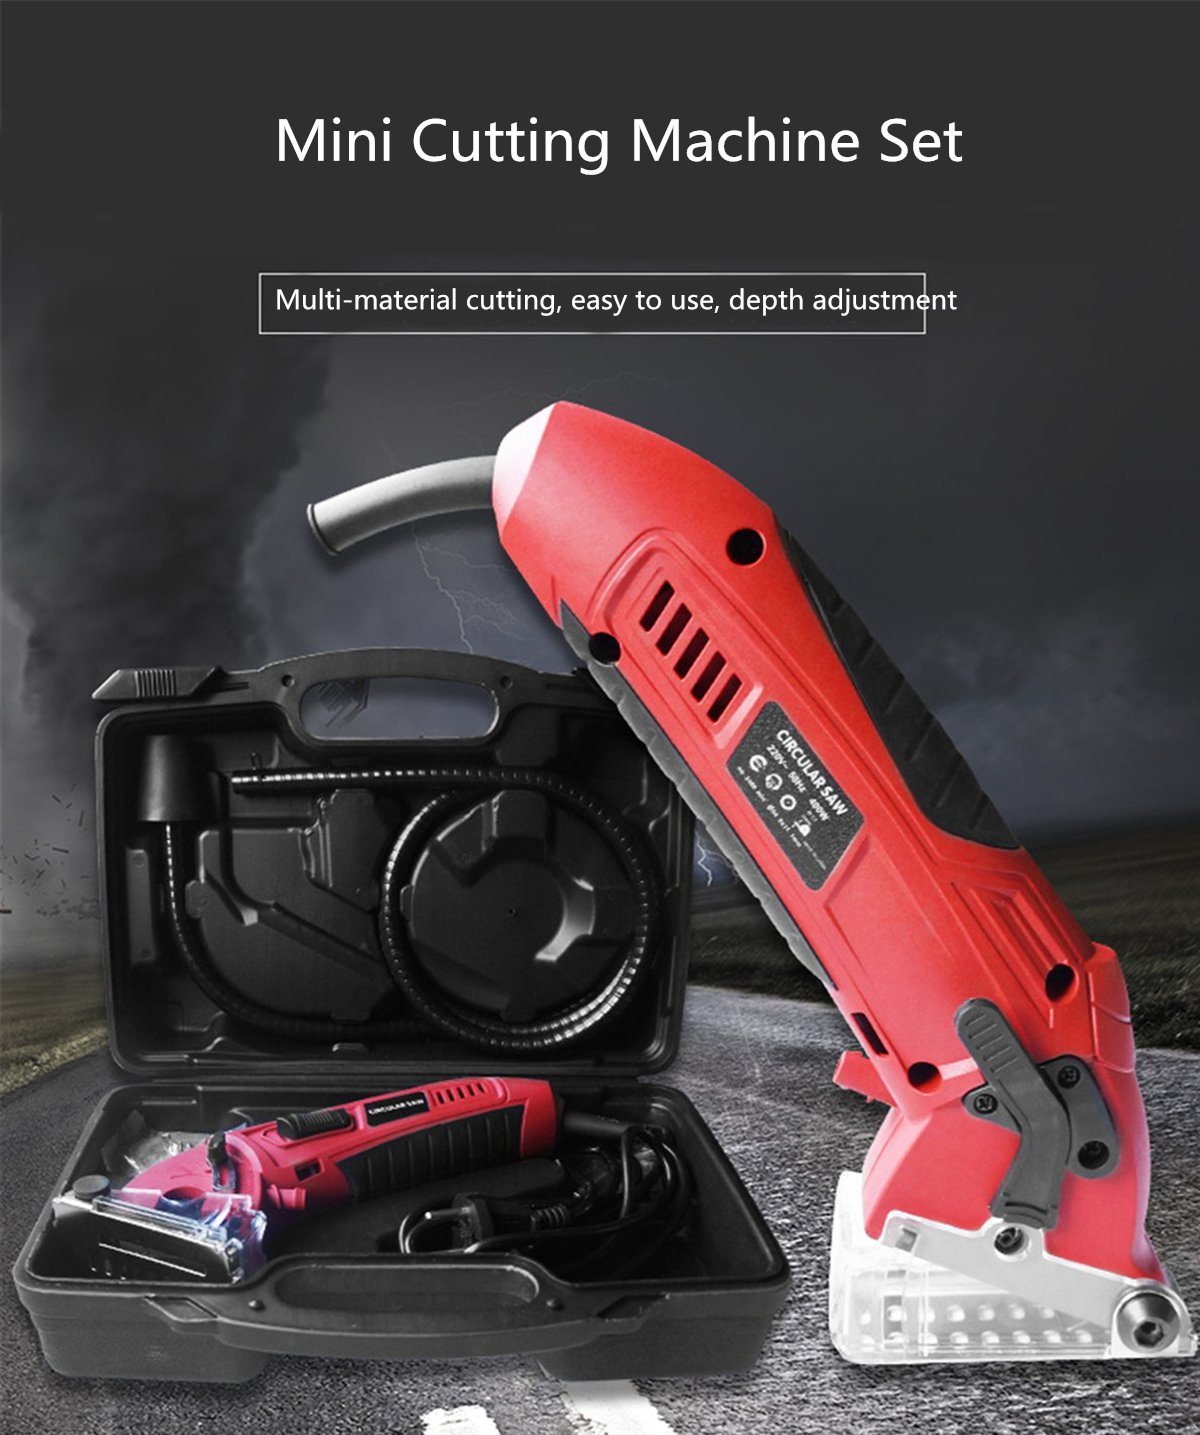 110V220V-400W-Mini-Electric-Saws-Circular-Saw-Multifunctional-DIY-Woodwork-Cutting-Machine-W-3pcs-Bl-1760776-1